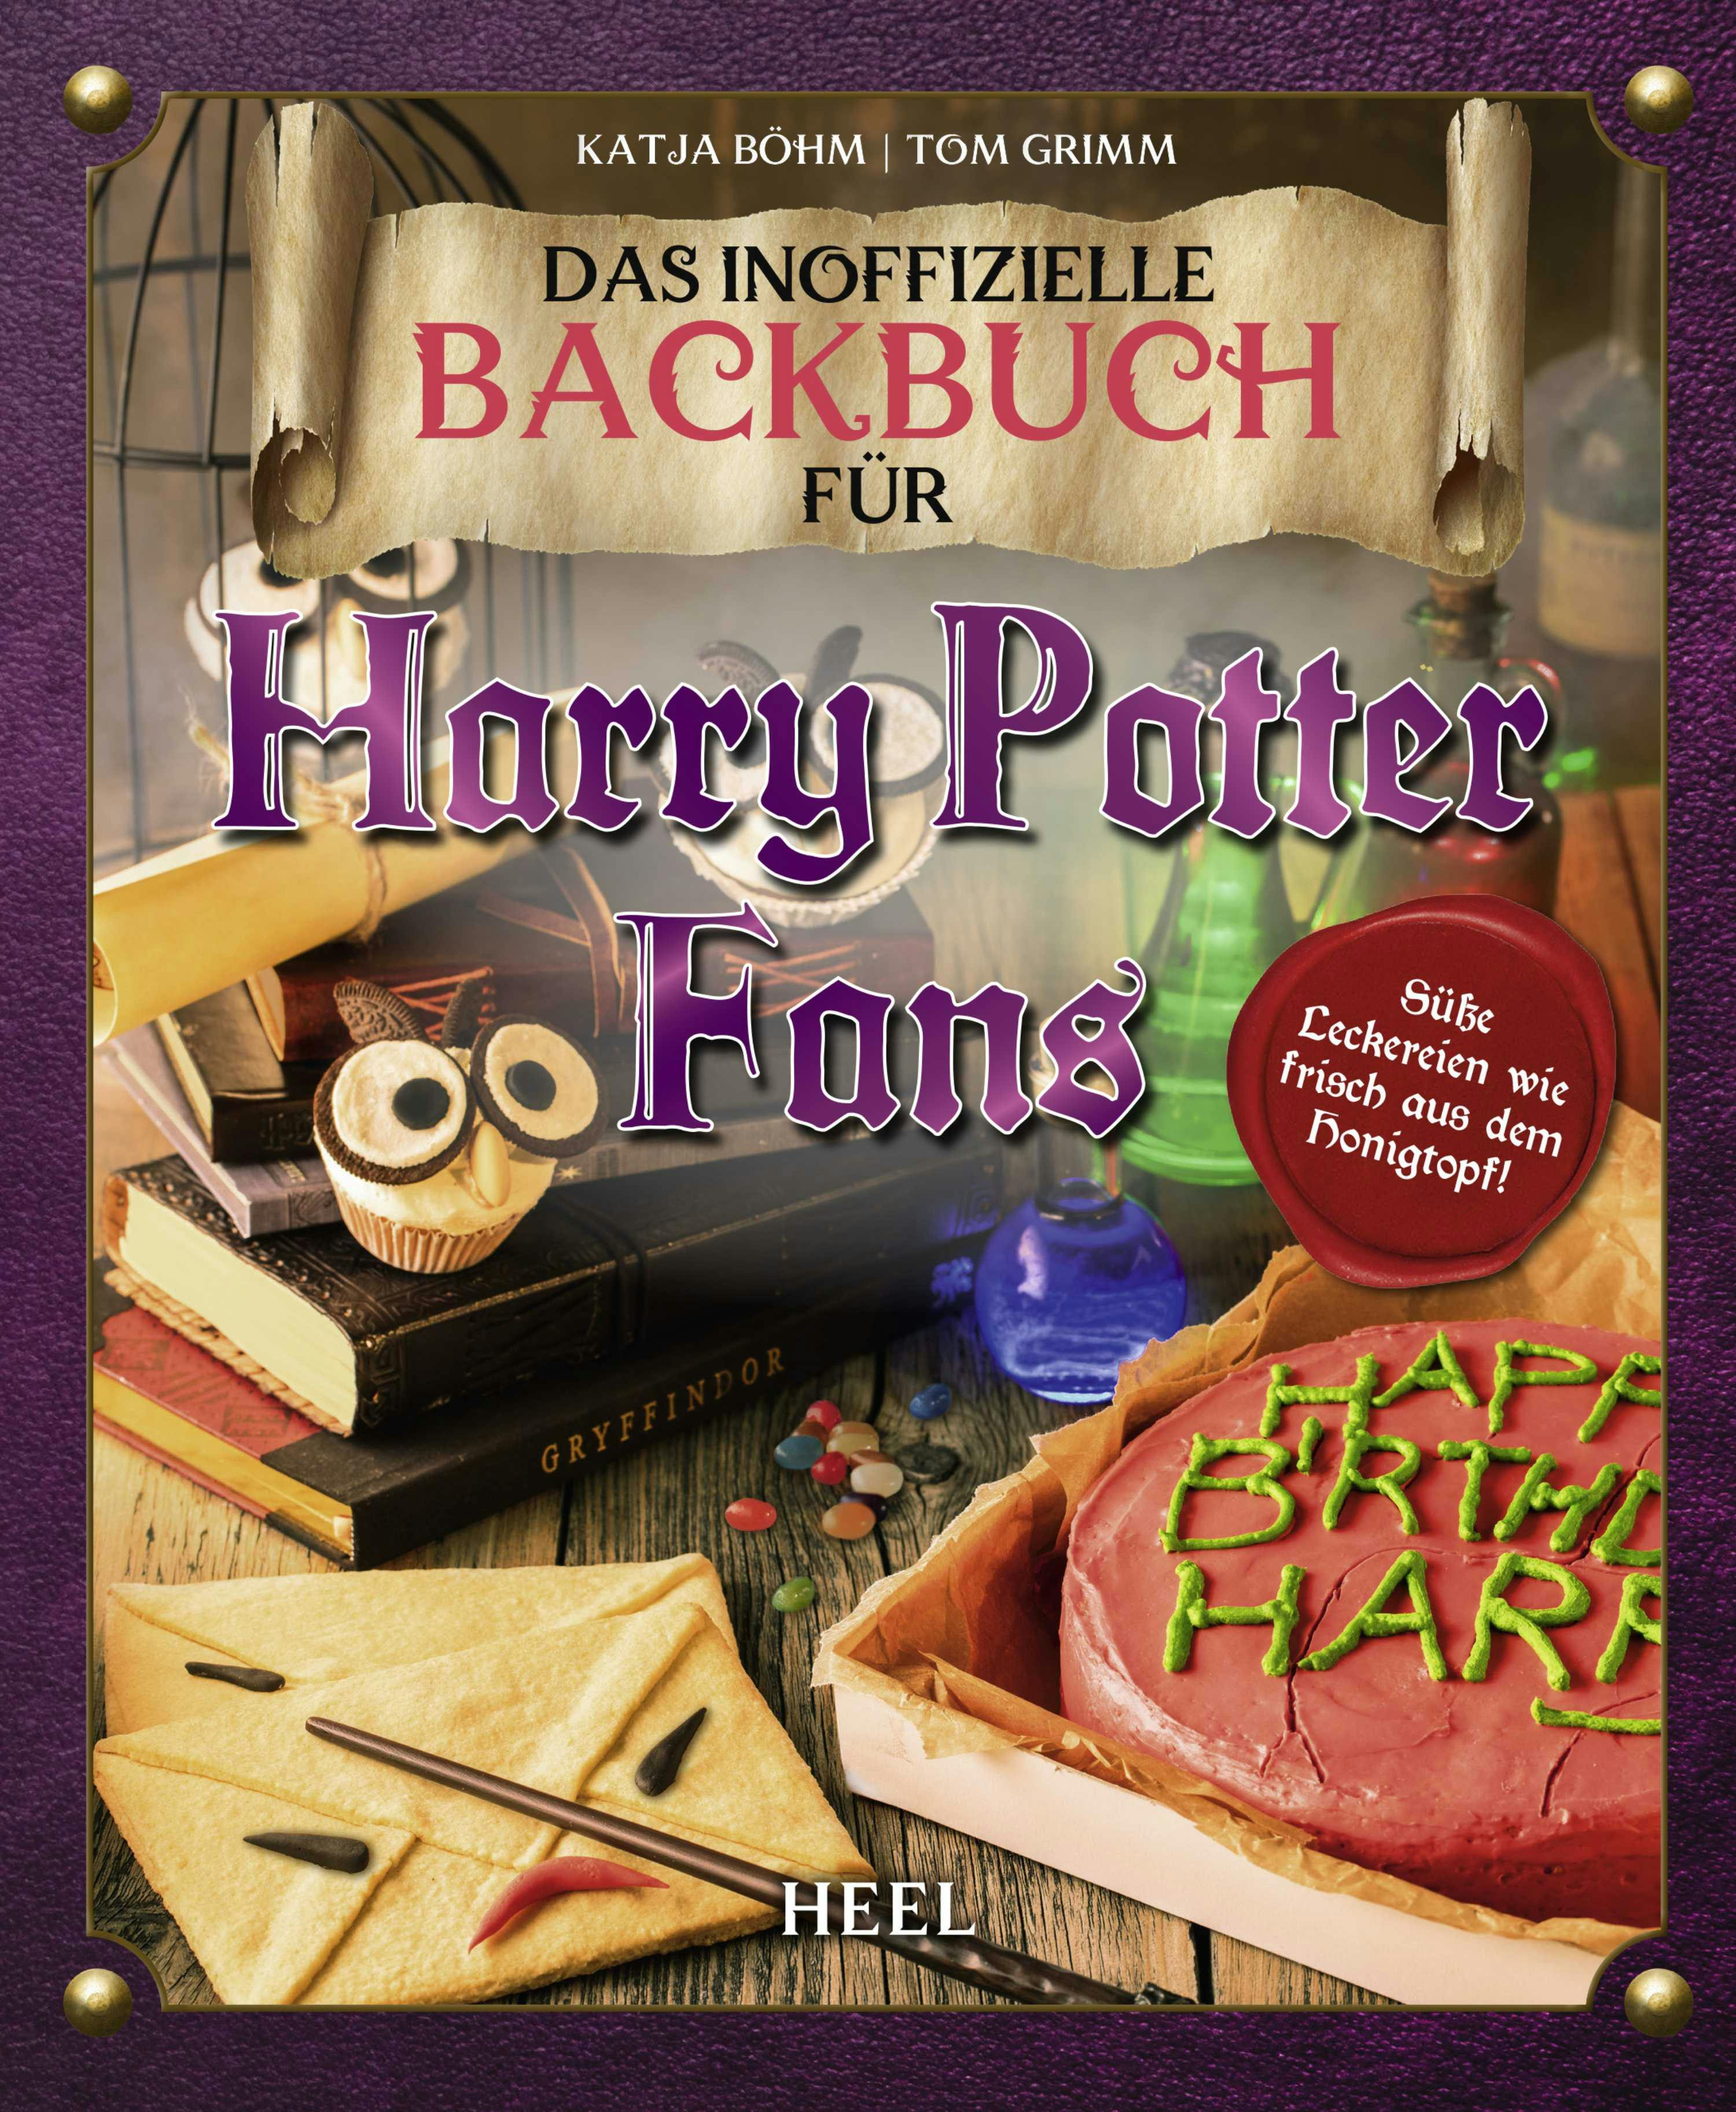 Das inoffizielle Backbuch für Harry Potter Fans: Süße Leckereien wie frisch aus dem Honigtopf - undefined